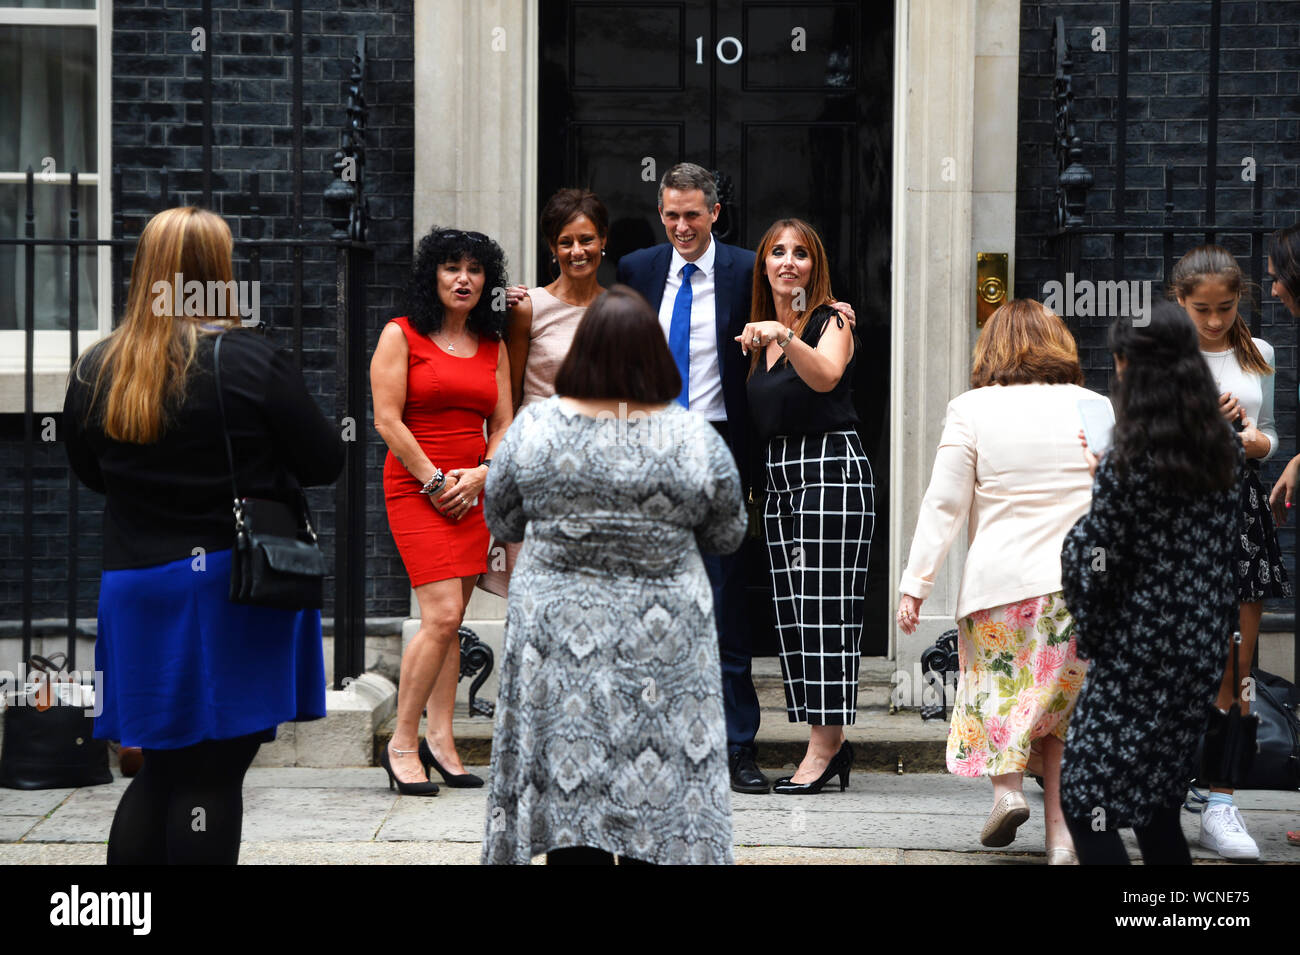 Gavin Williamson, der konservative Abgeordnete für South Staffordshire und der Staatssekretär für Bildung traf sich mit Frauen aus dem gesamten Spektrum der Bildung, Schüler zu Profis. Er posierte für Fotos mit Ihnen außerhalb 10 Downing Street, London. Stockfoto